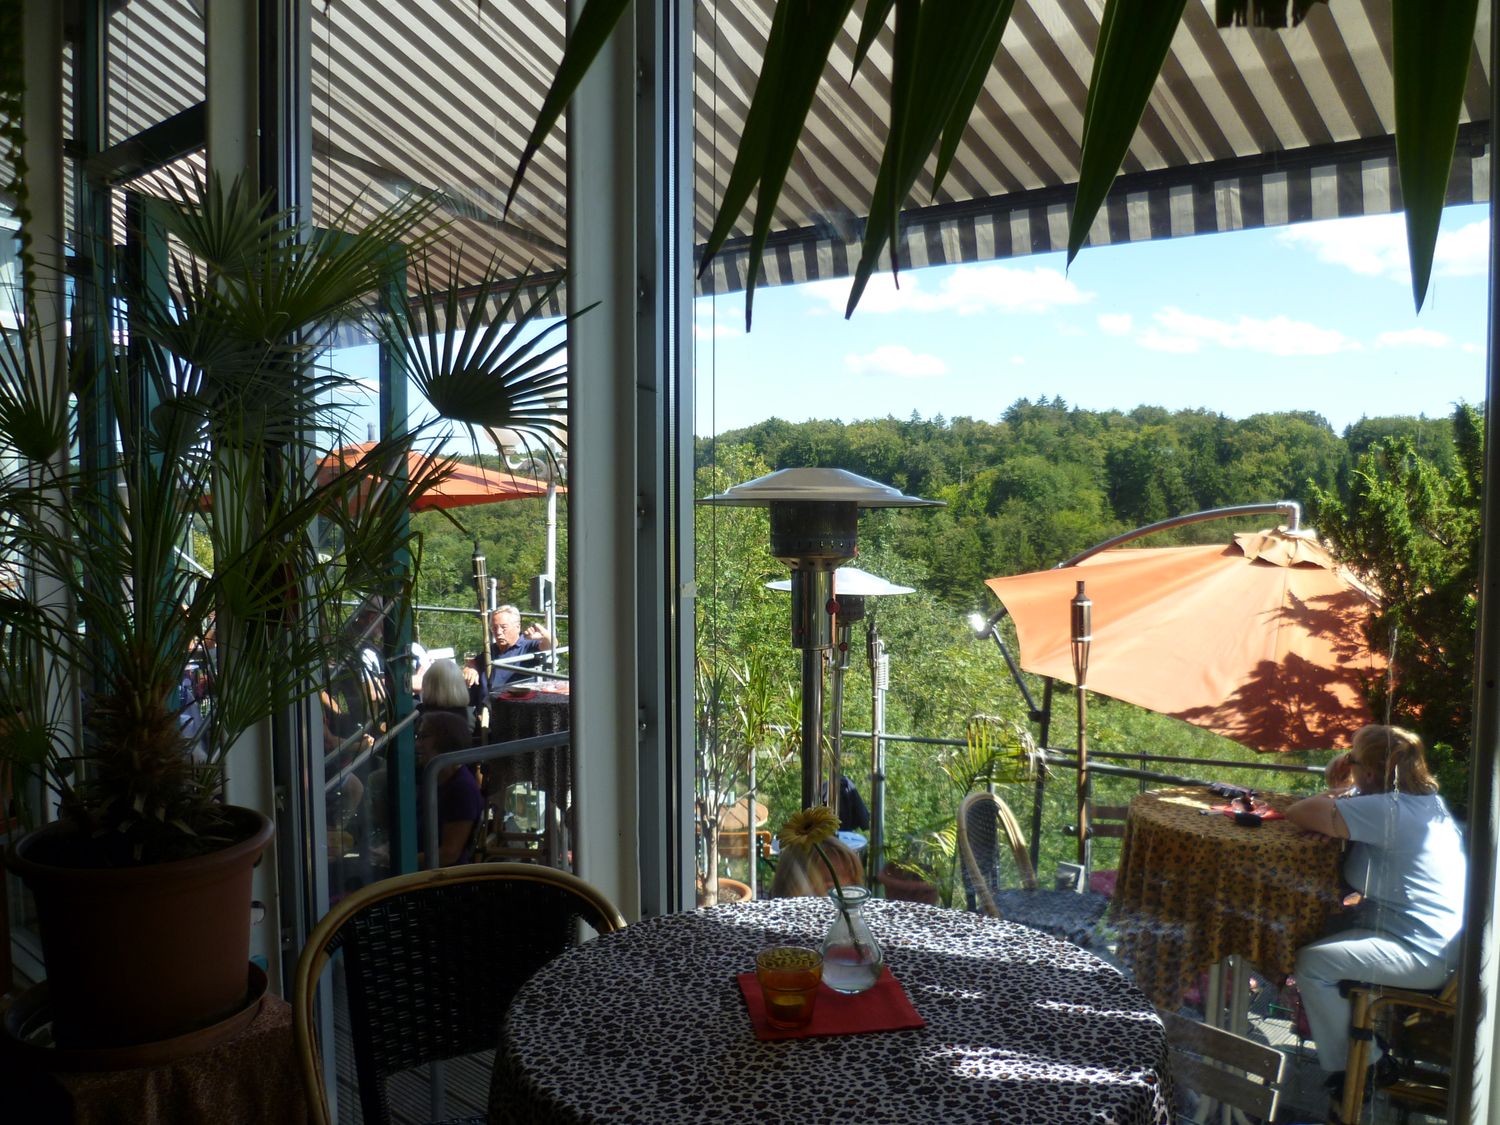 Bilder und Fotos zu Treibhaus Bistro Café in Pullach im Isartal,  Heilmannstr.